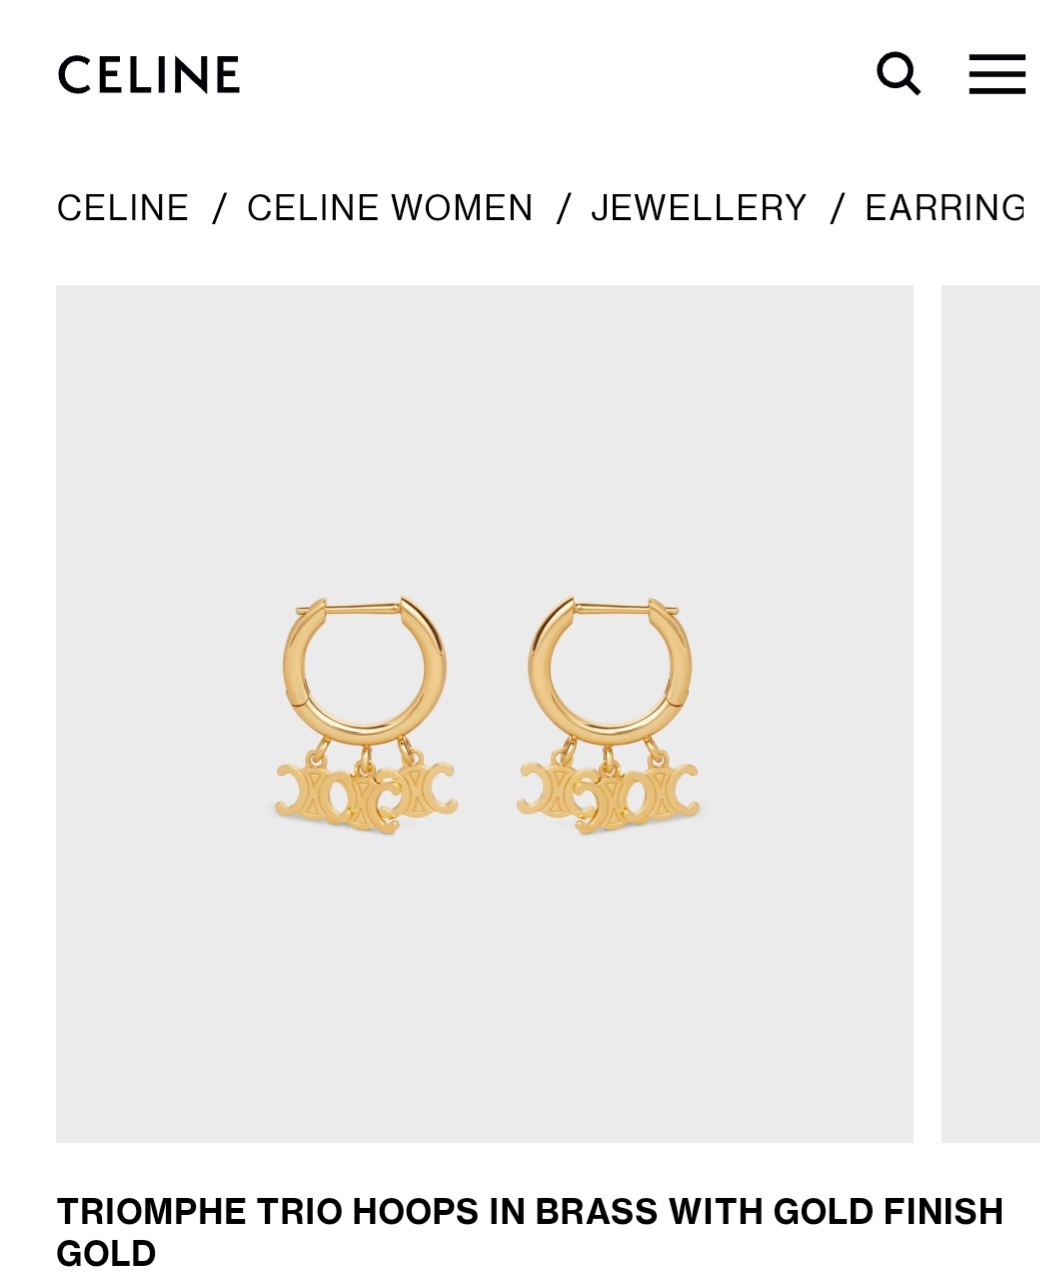 Celine Triomphe Trio hoops earrings